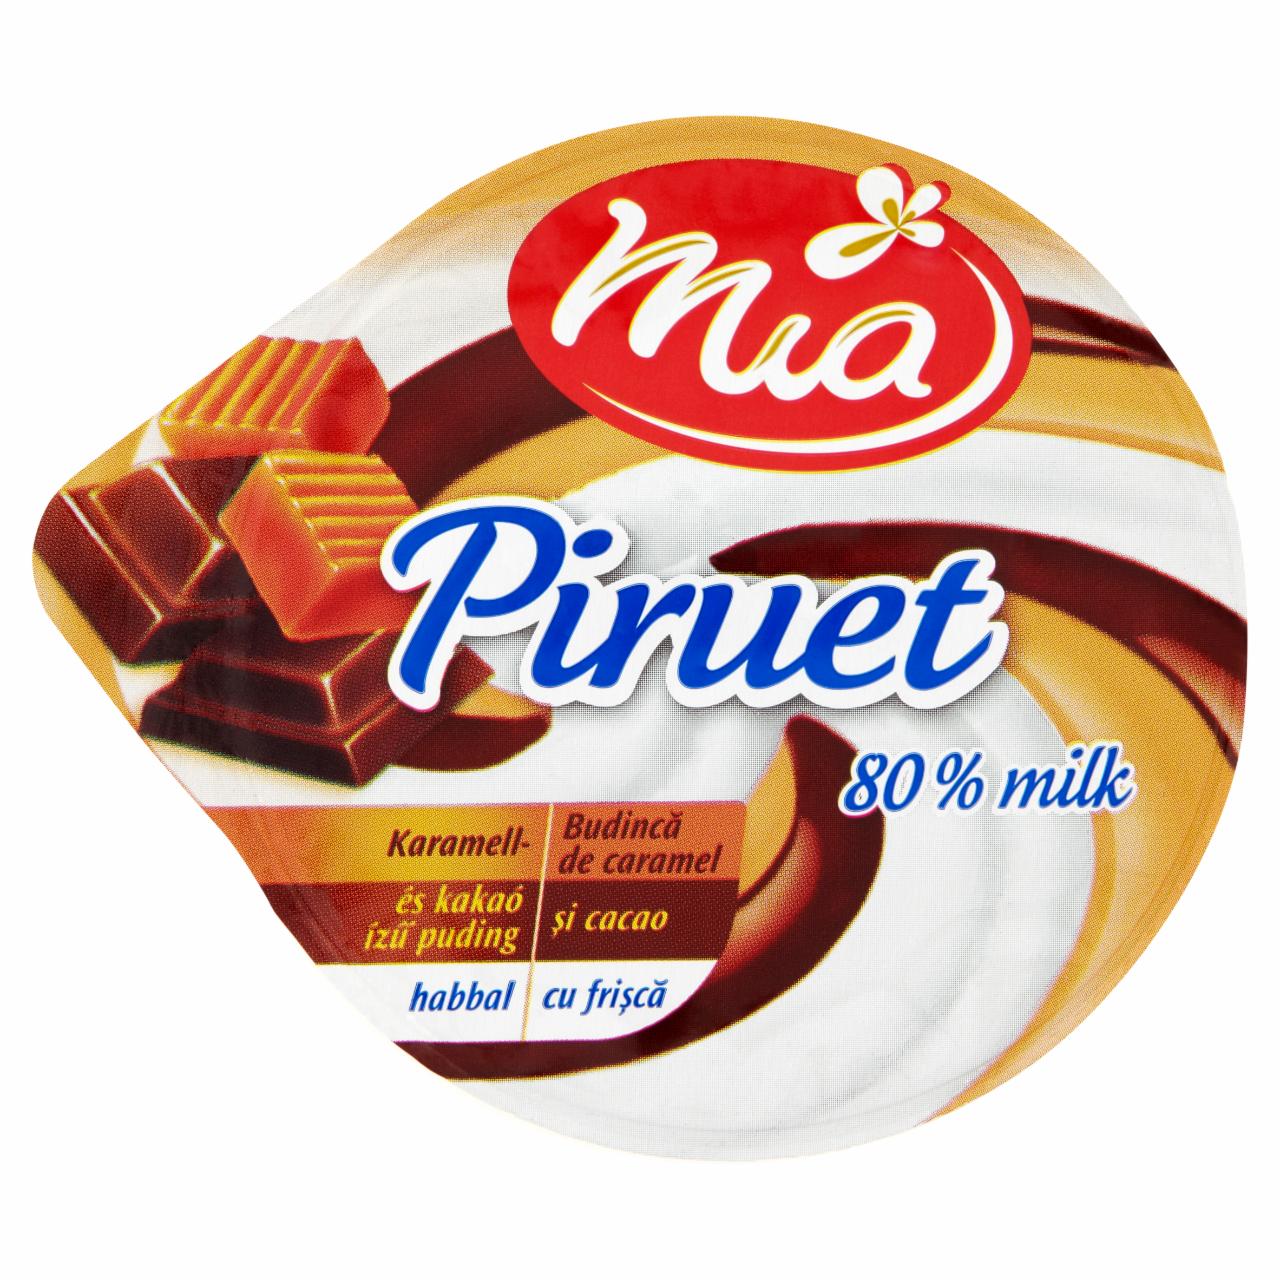 Képek - Mia Piruet karamell- és kakaó ízű puding habbal 120 g